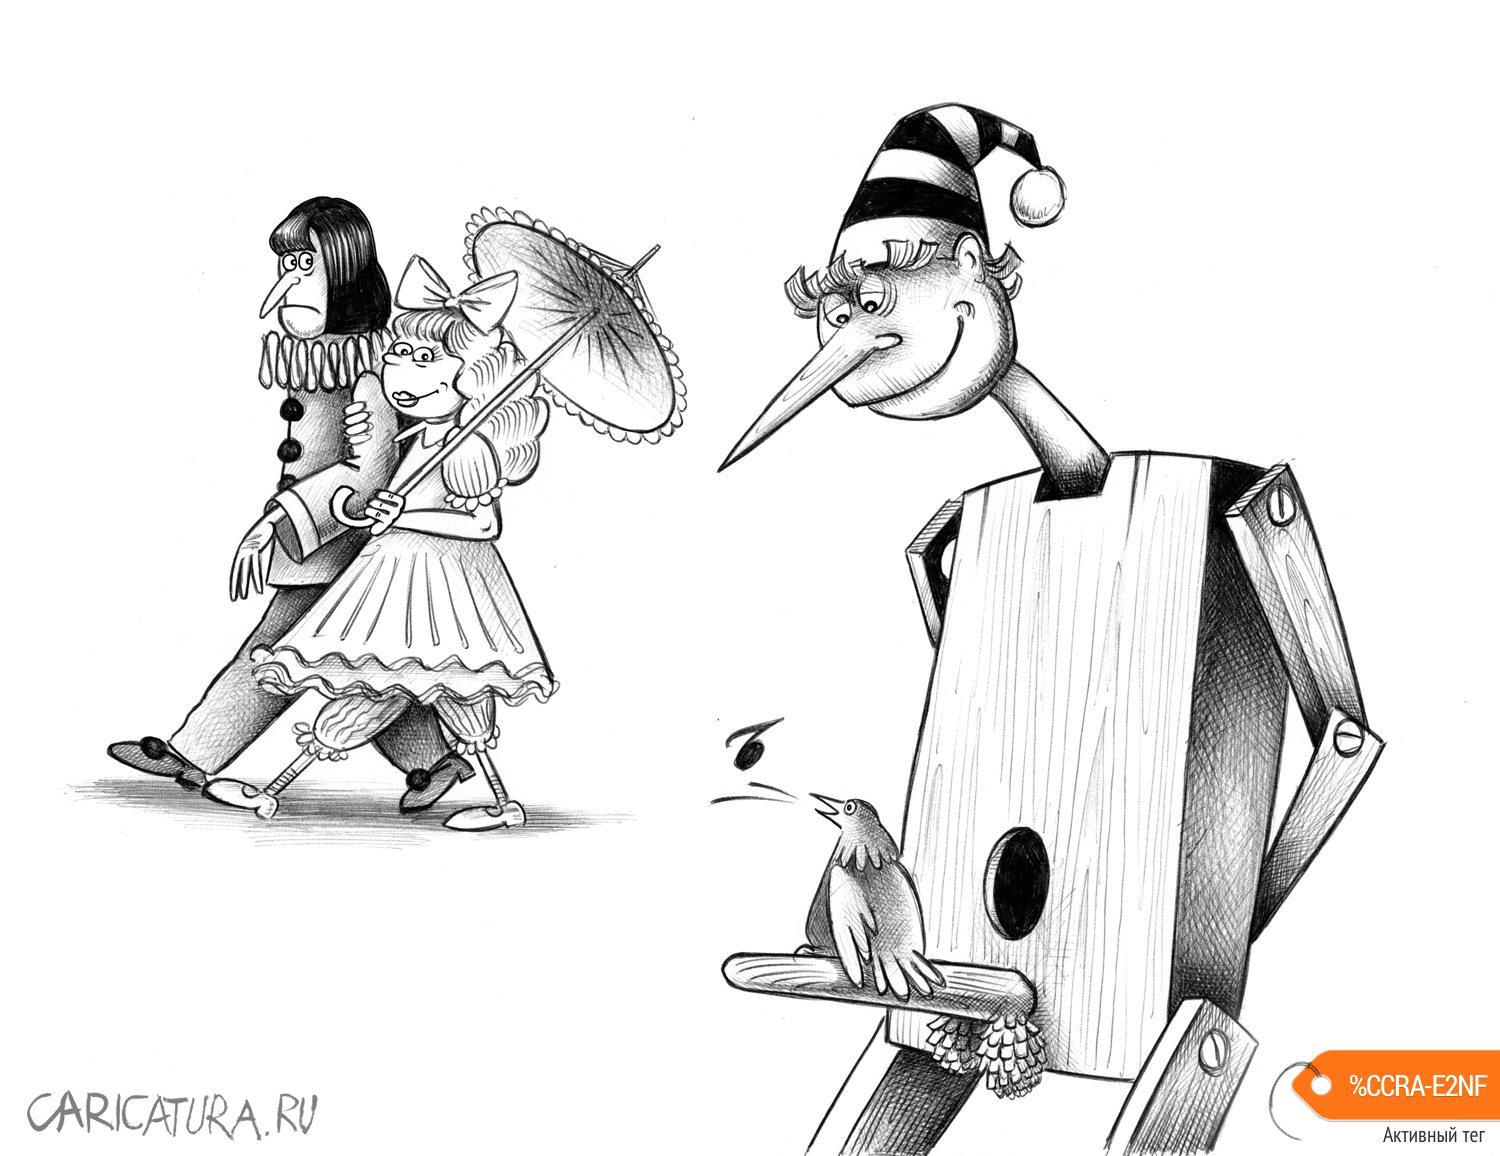 Карикатура "Скворец", Сергей Корсун